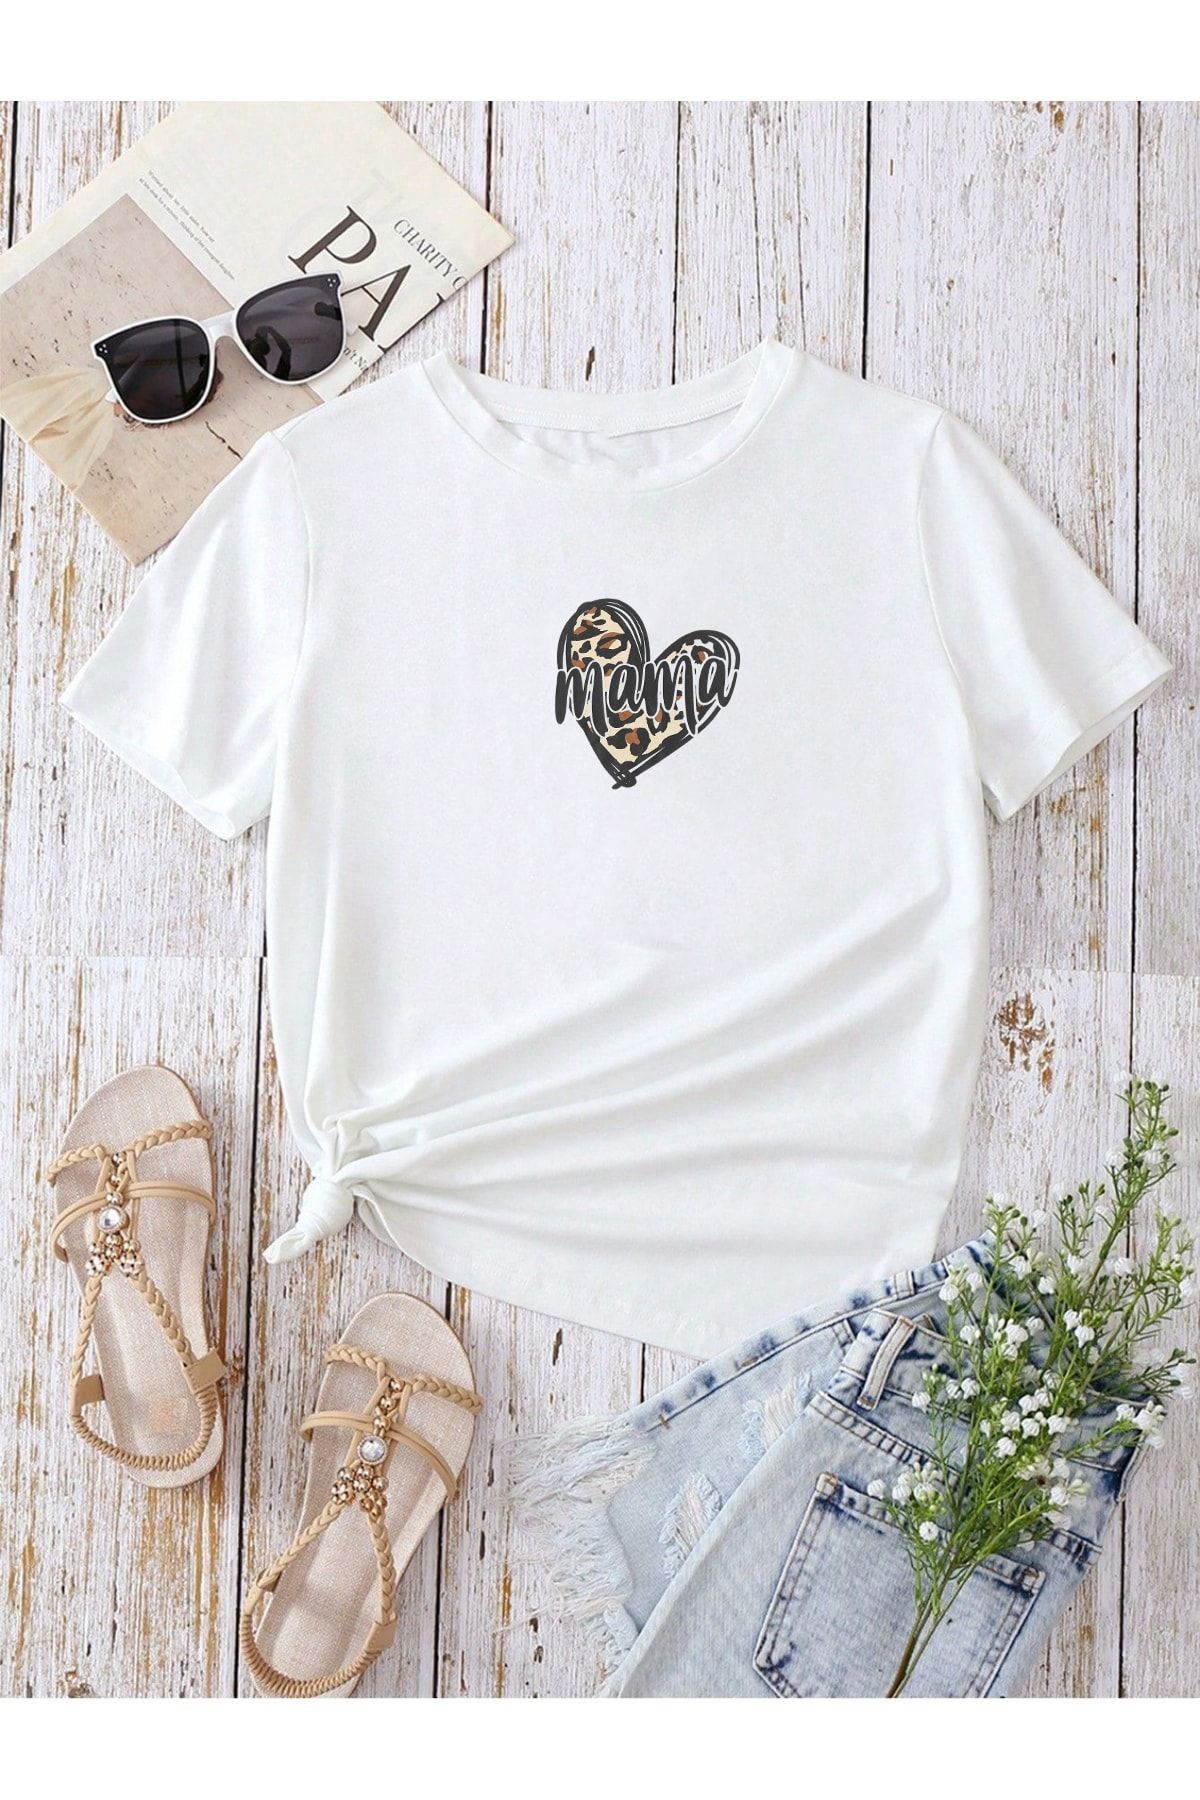 DUBU BUTİK Hamile Gebe T-shirt Mama Kalp Baskılı - Beyaz Bisiklet Yaka Oversize Tişört